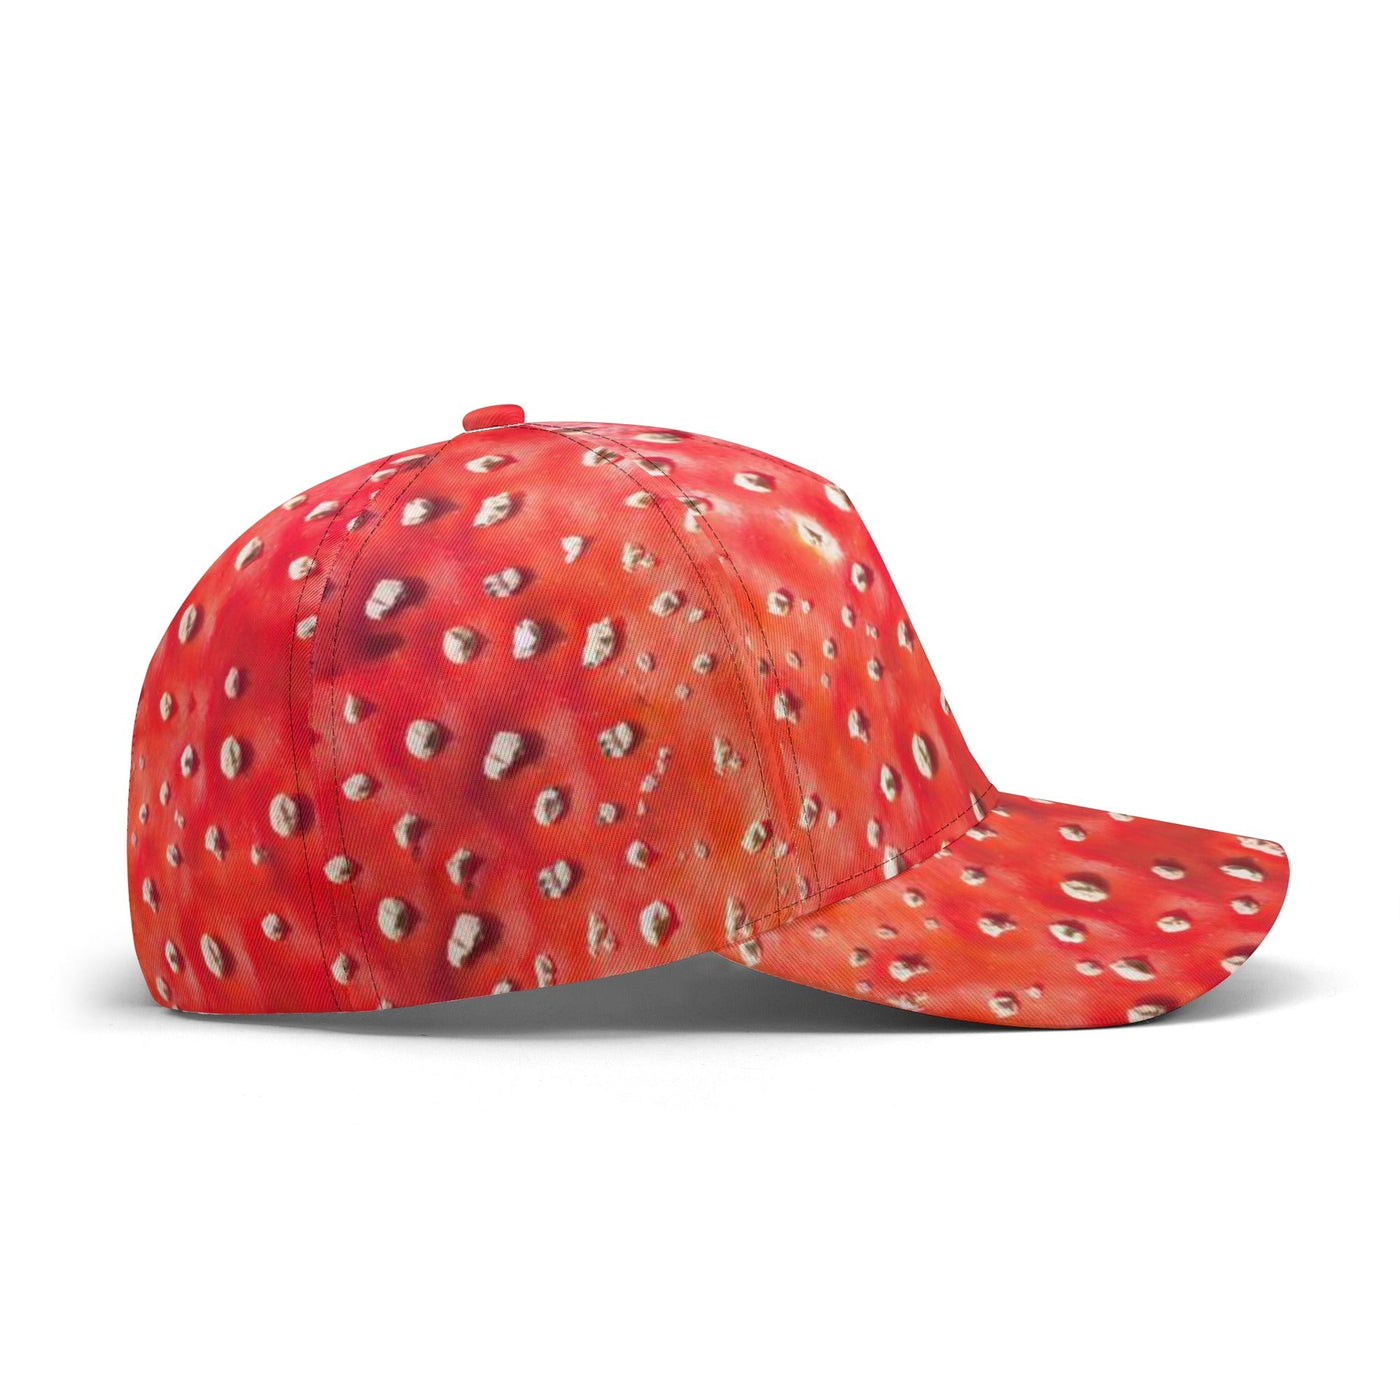 Fly Agaric Mushroom | Hippie Raver Baseball Hat